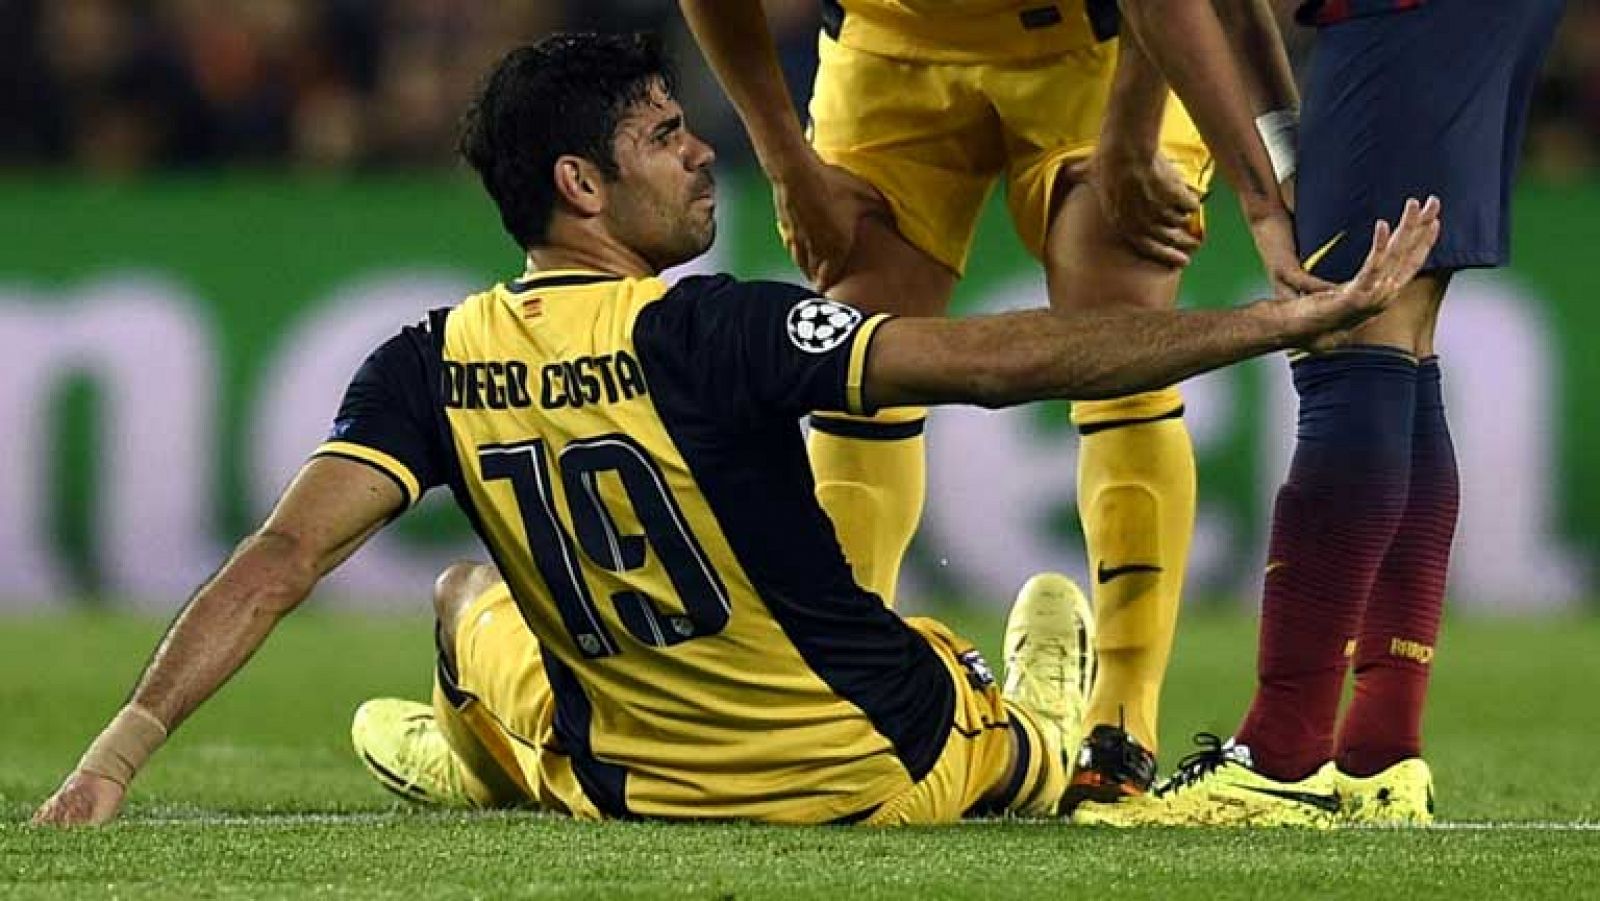 El delantero hispanobrasileño Diego Costa ha tenido que ser cambiado en el minuto 30 del partido Barça-Atlético de Madrid, al notar un pinchazo en los músculos isquiotibiales de la cara posterior del muslo derecho, hecho que ha confirmado que el juga